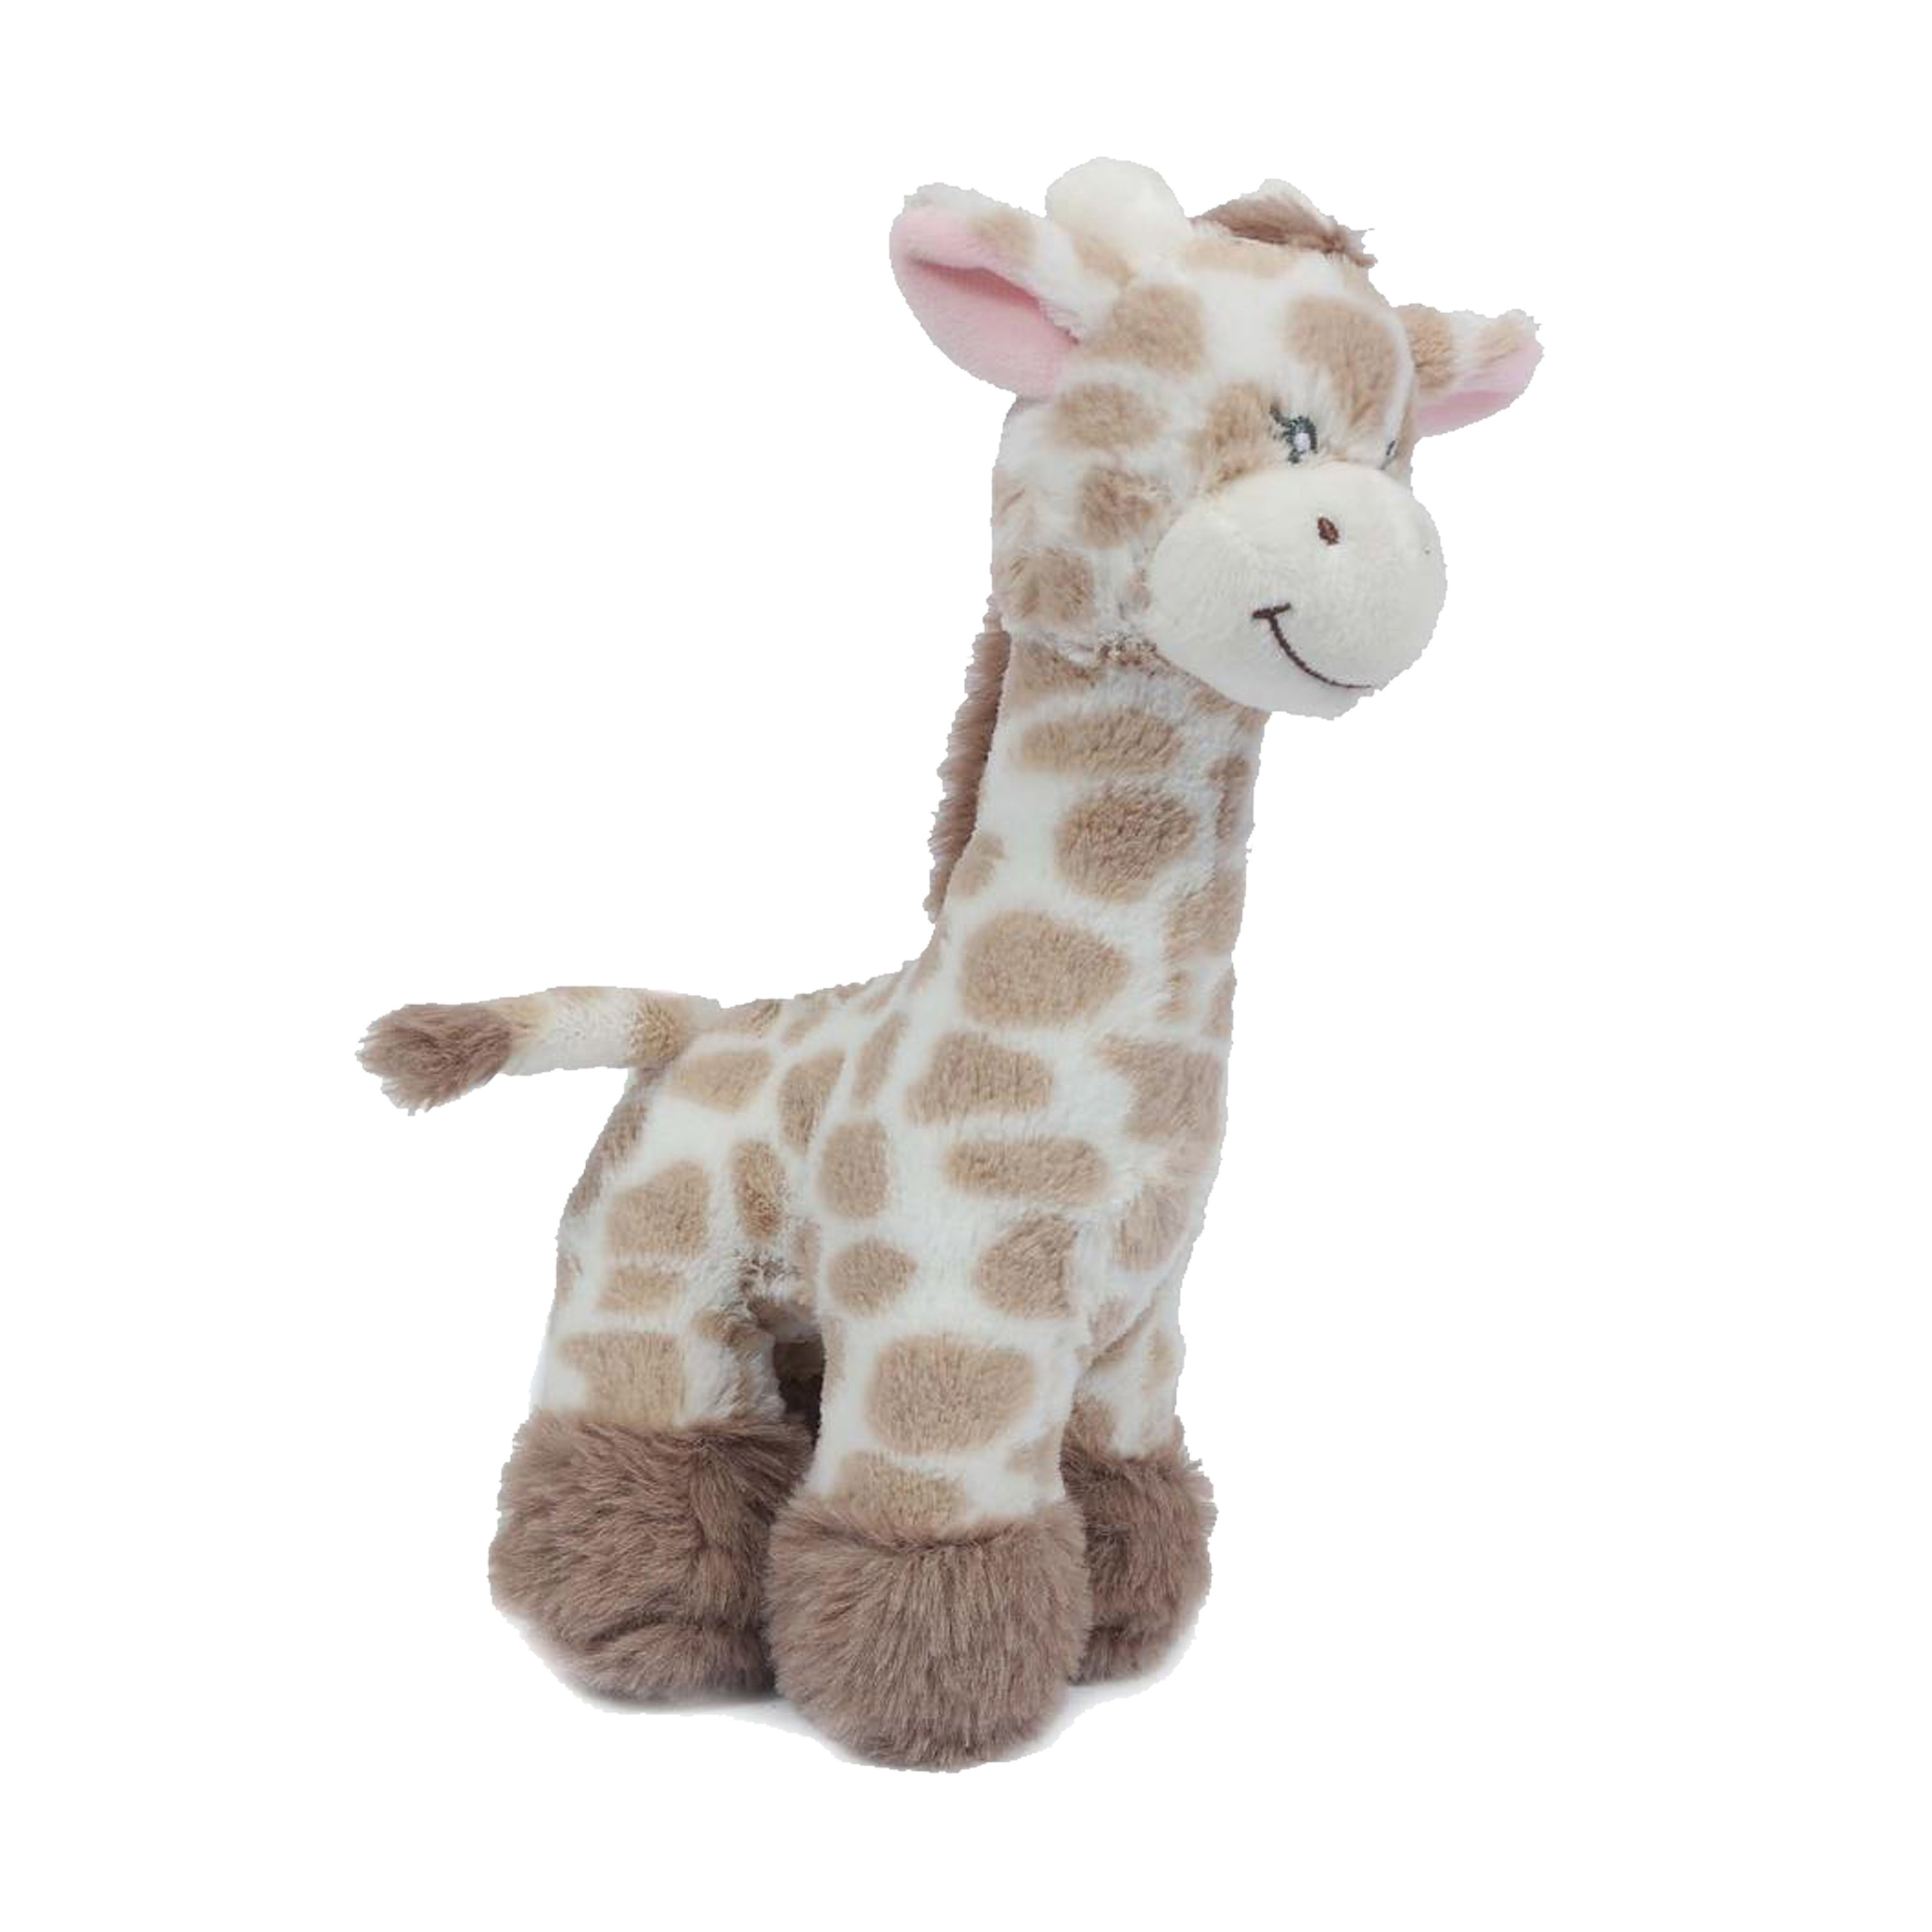 Knuffeldier Giraffe zachte pluche stof lichtbruin kwaliteit knuffels 28 cm liggend